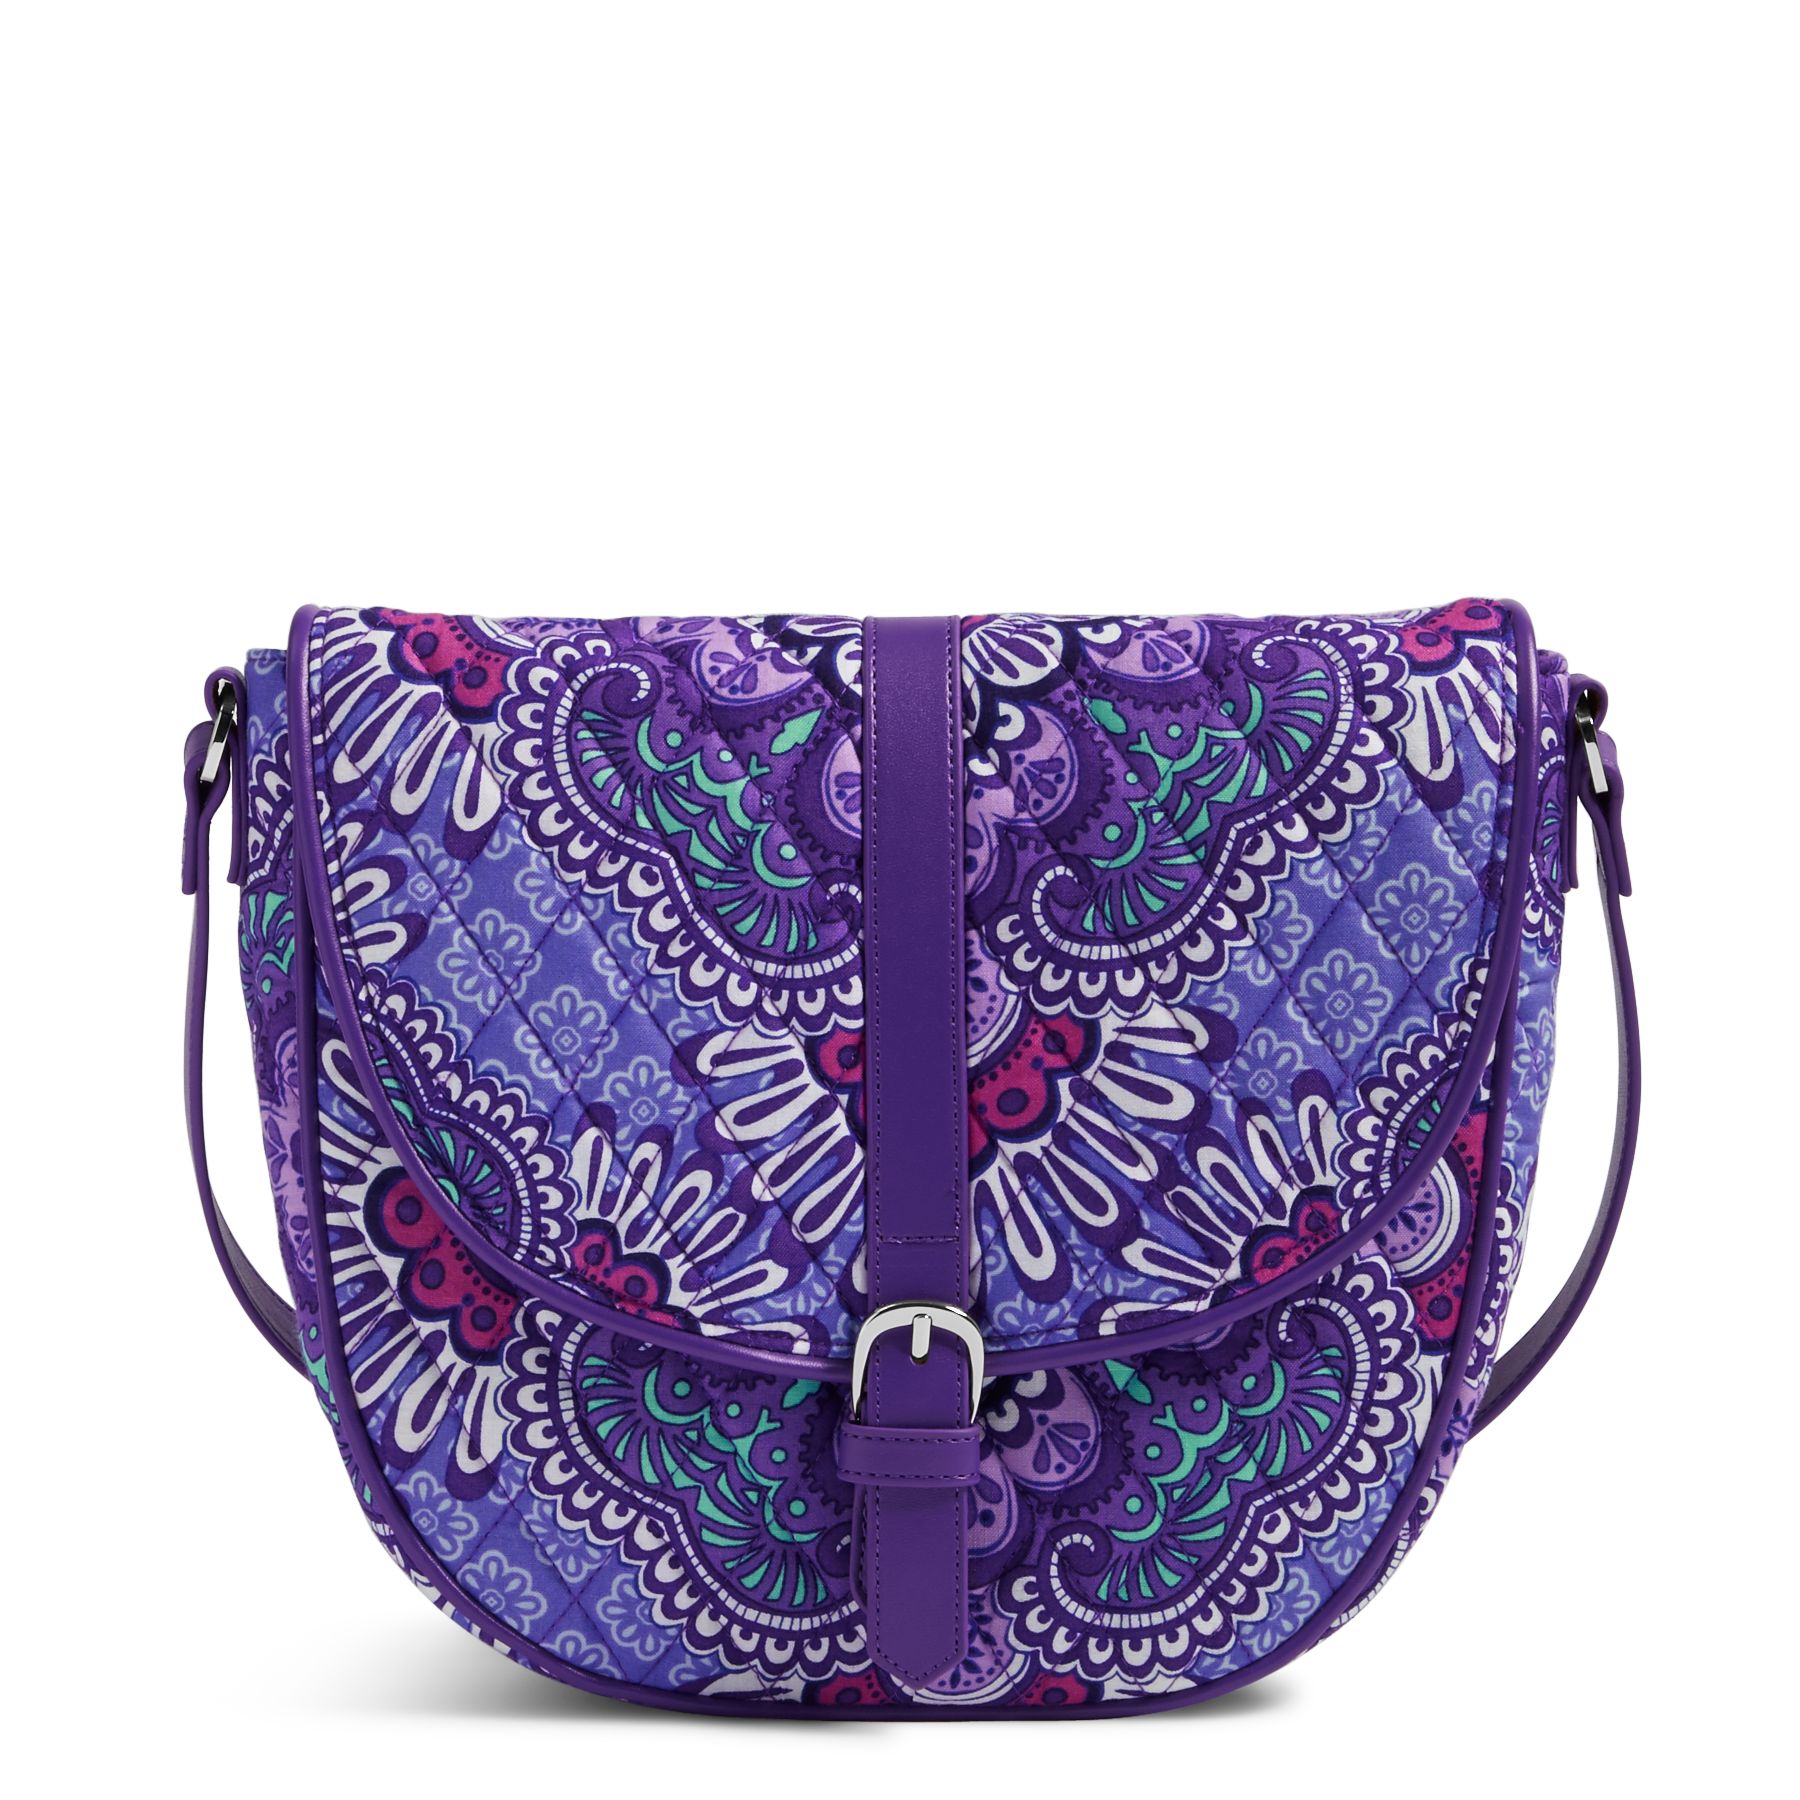 Vera Bradley Slim Saddle Bag in Lilac TapestryCrossbodies